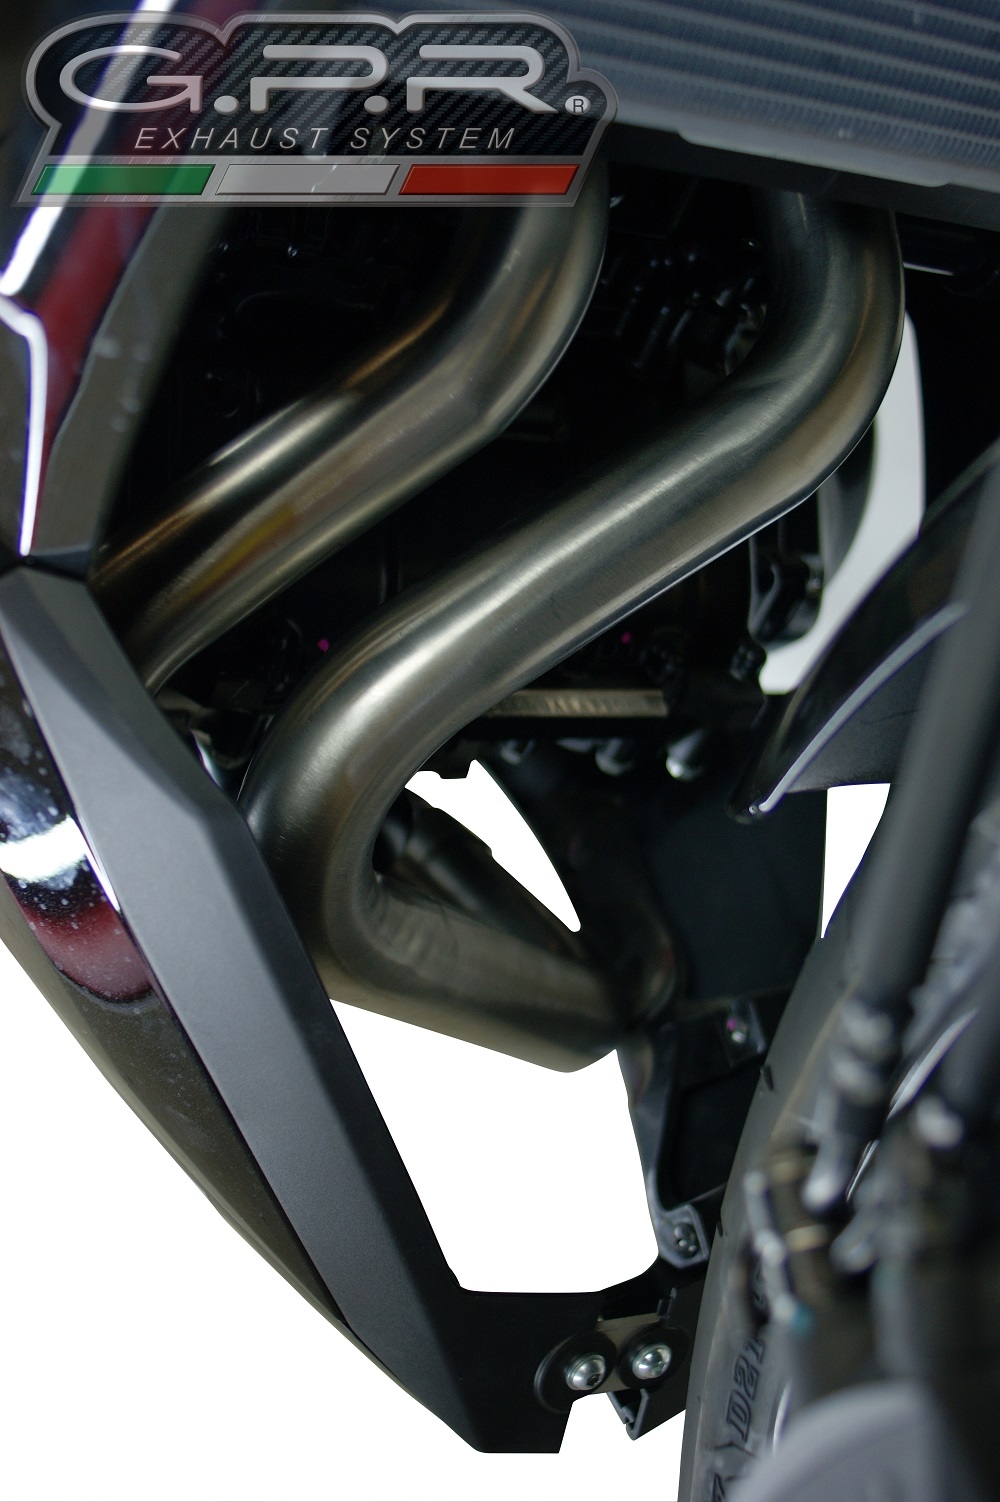 Scarico compatibile con Kawasaki Ninja 650 2017-2020, Satinox, Scarico completo omologato,fornito con db killer estraibile,catalizzatore e collettore